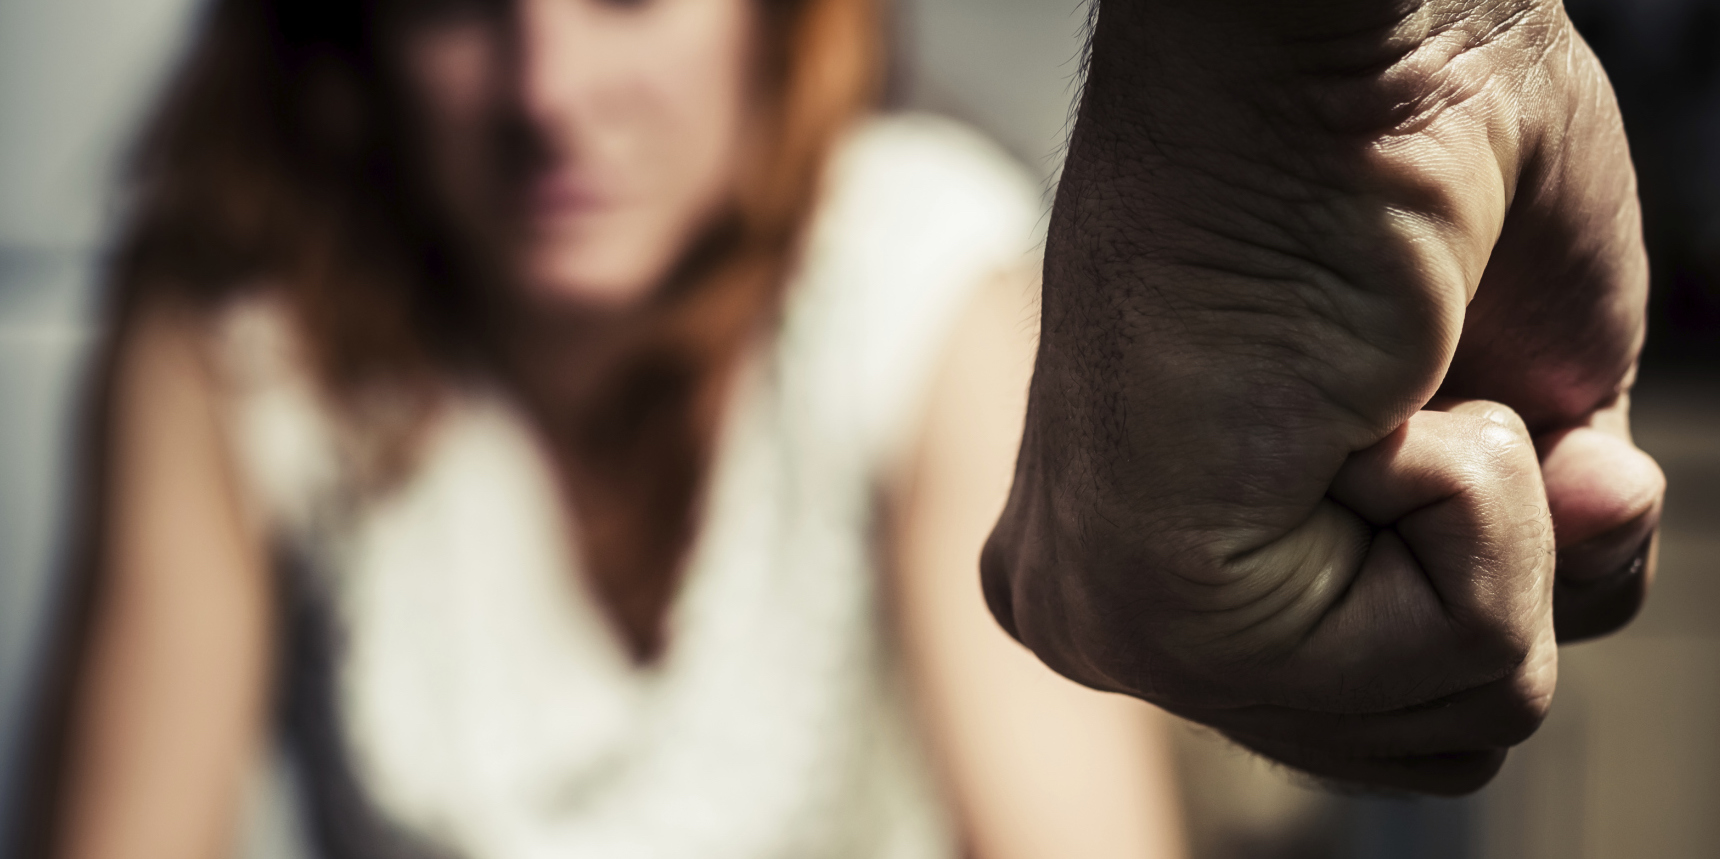 Série especial violência doméstica: ‘Fui um covarde’